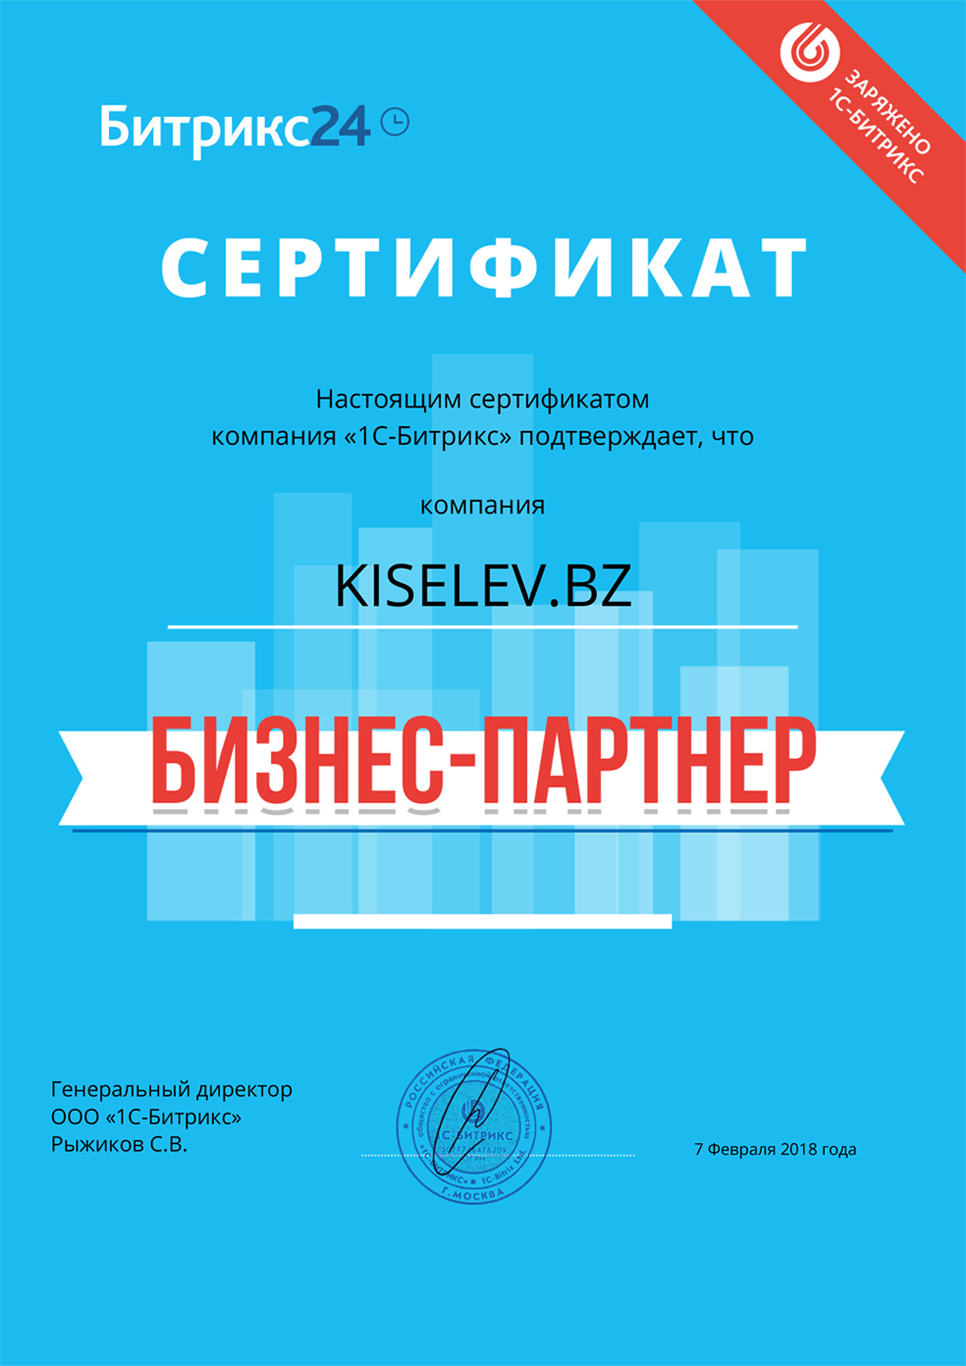 Сертификат партнёра по АМОСРМ в Воскресенске